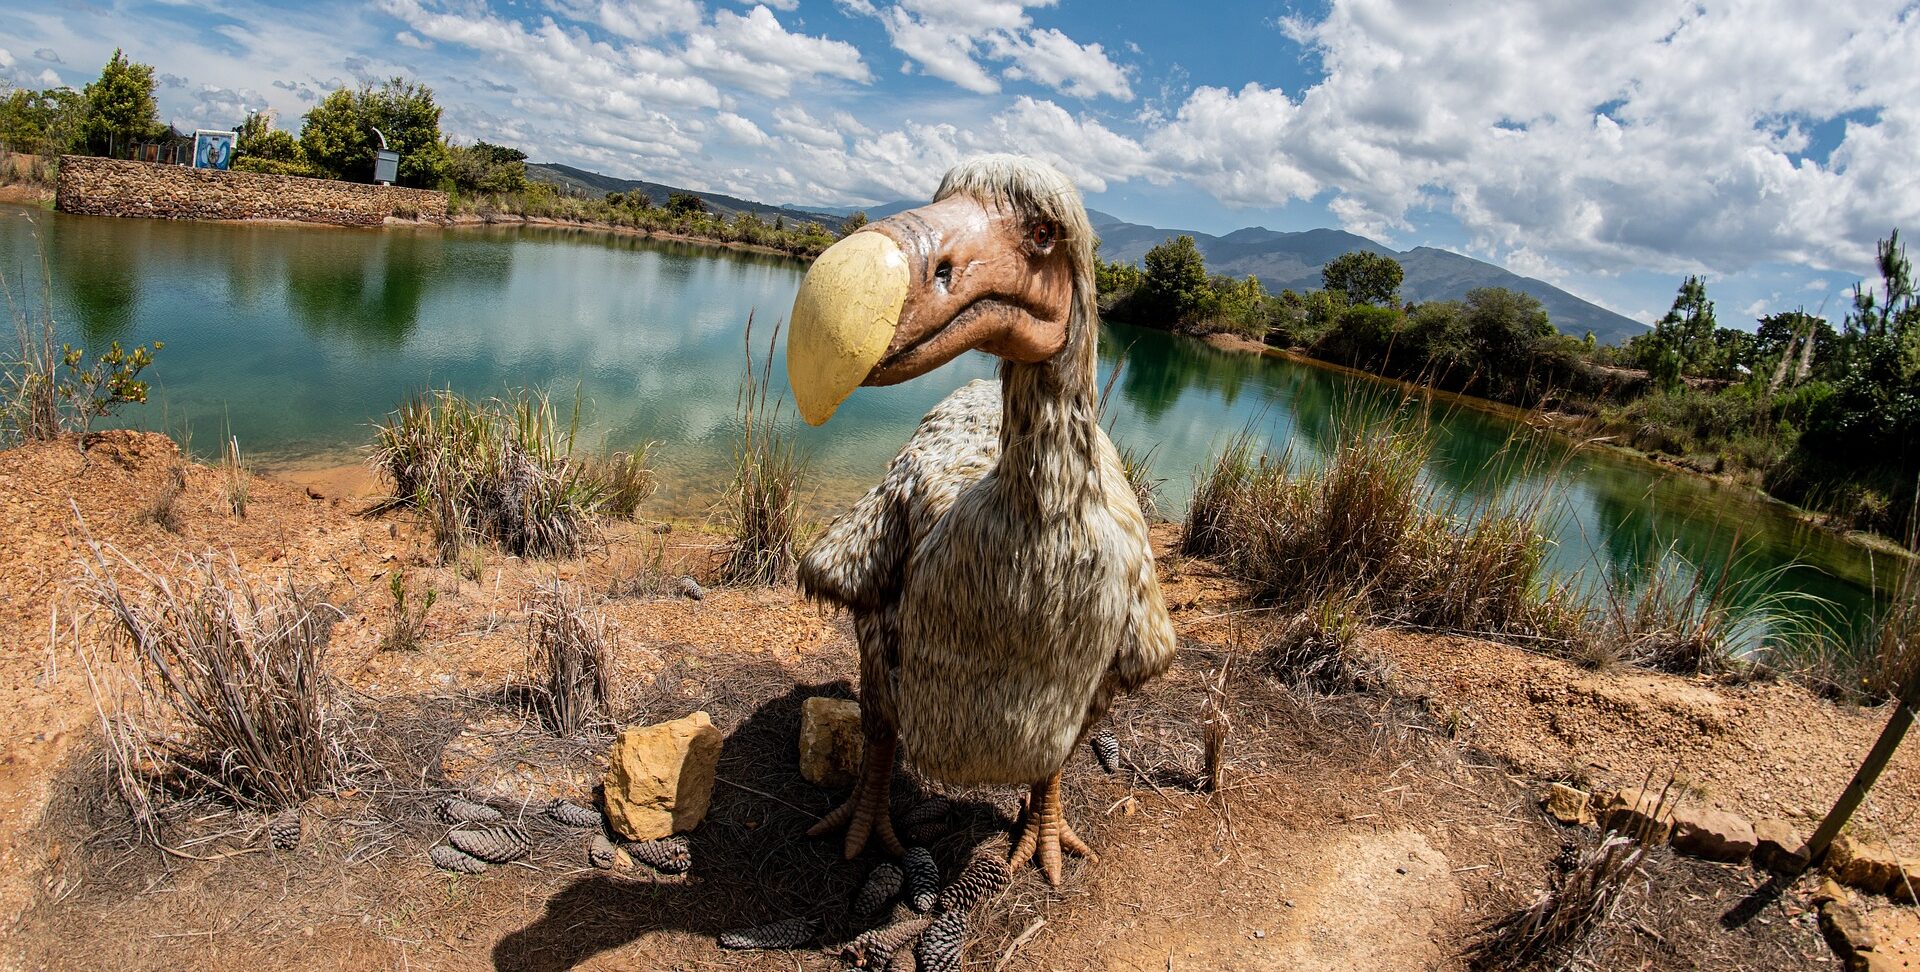 Το πτηνό dodo / ντόντο που εξαφανίστηκε τον 17ο αιώνα